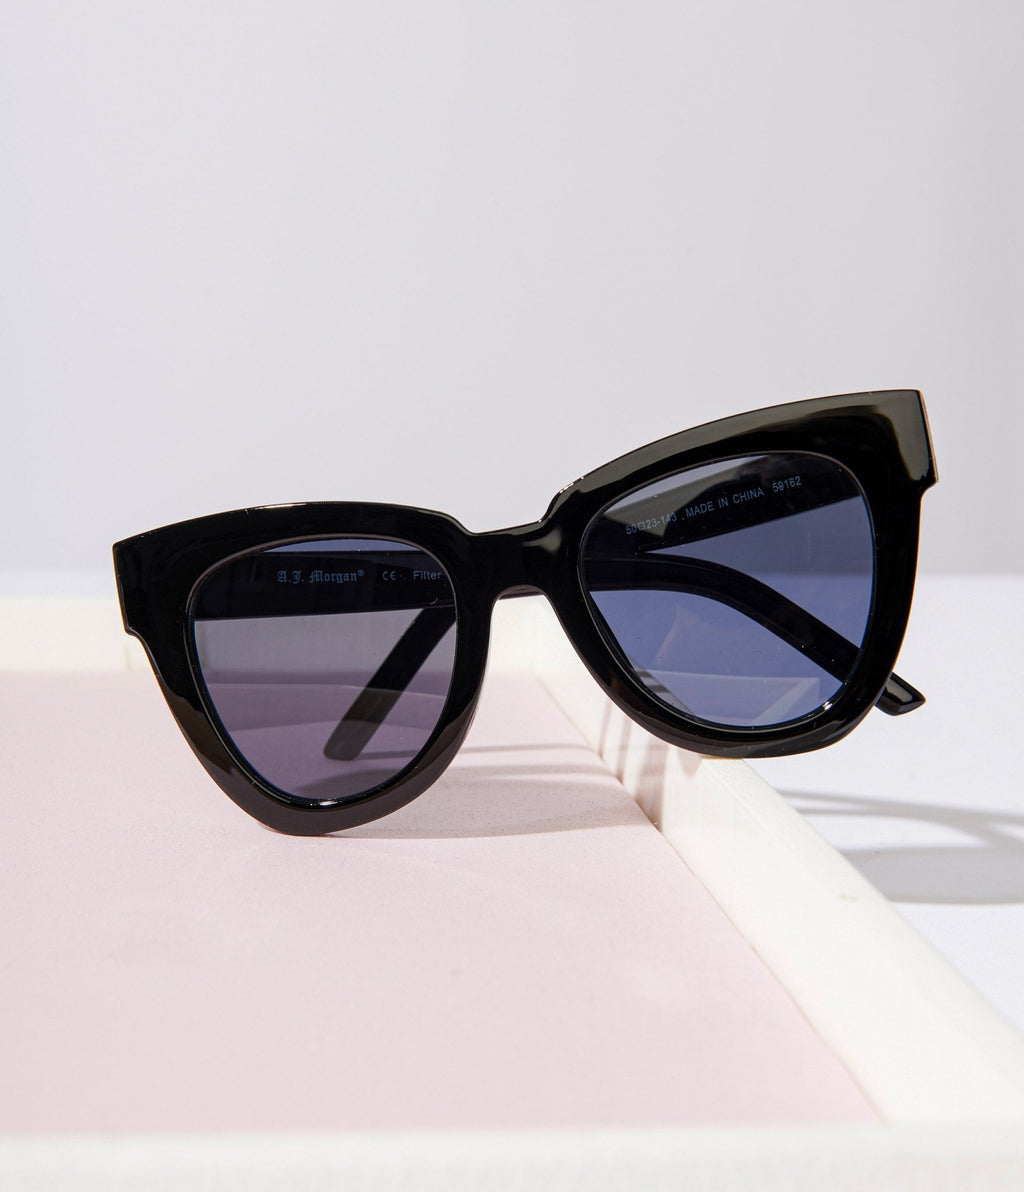 Unique and Retro Style Sunglasses for Women – Unique Vintage